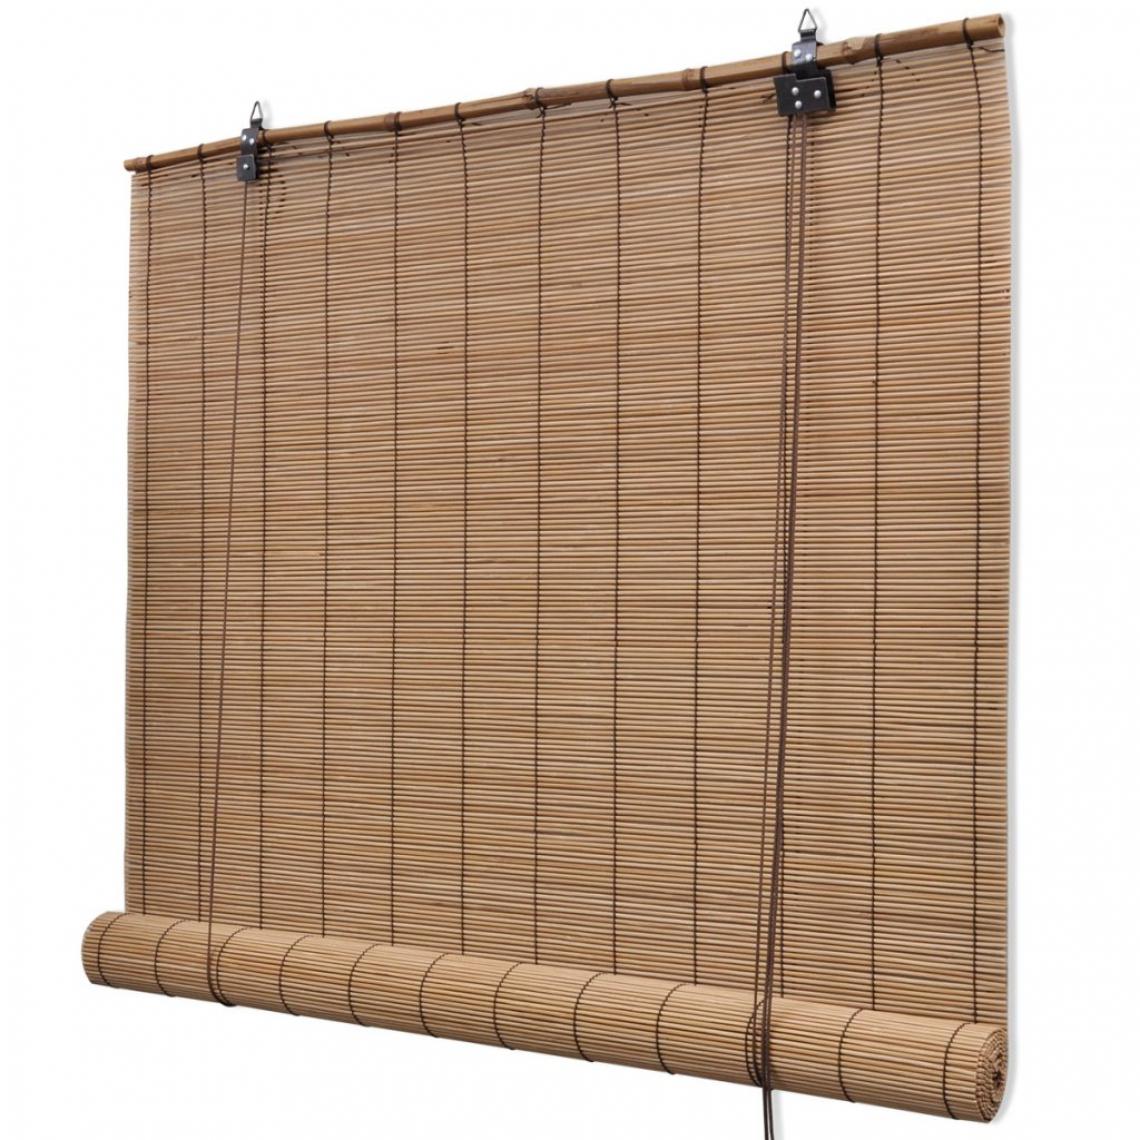 Helloshop26 - Store enrouleur bambou brun 120 x 220 cm fenêtre rideau pare-vue volet roulant 4102148 - Store compatible Velux